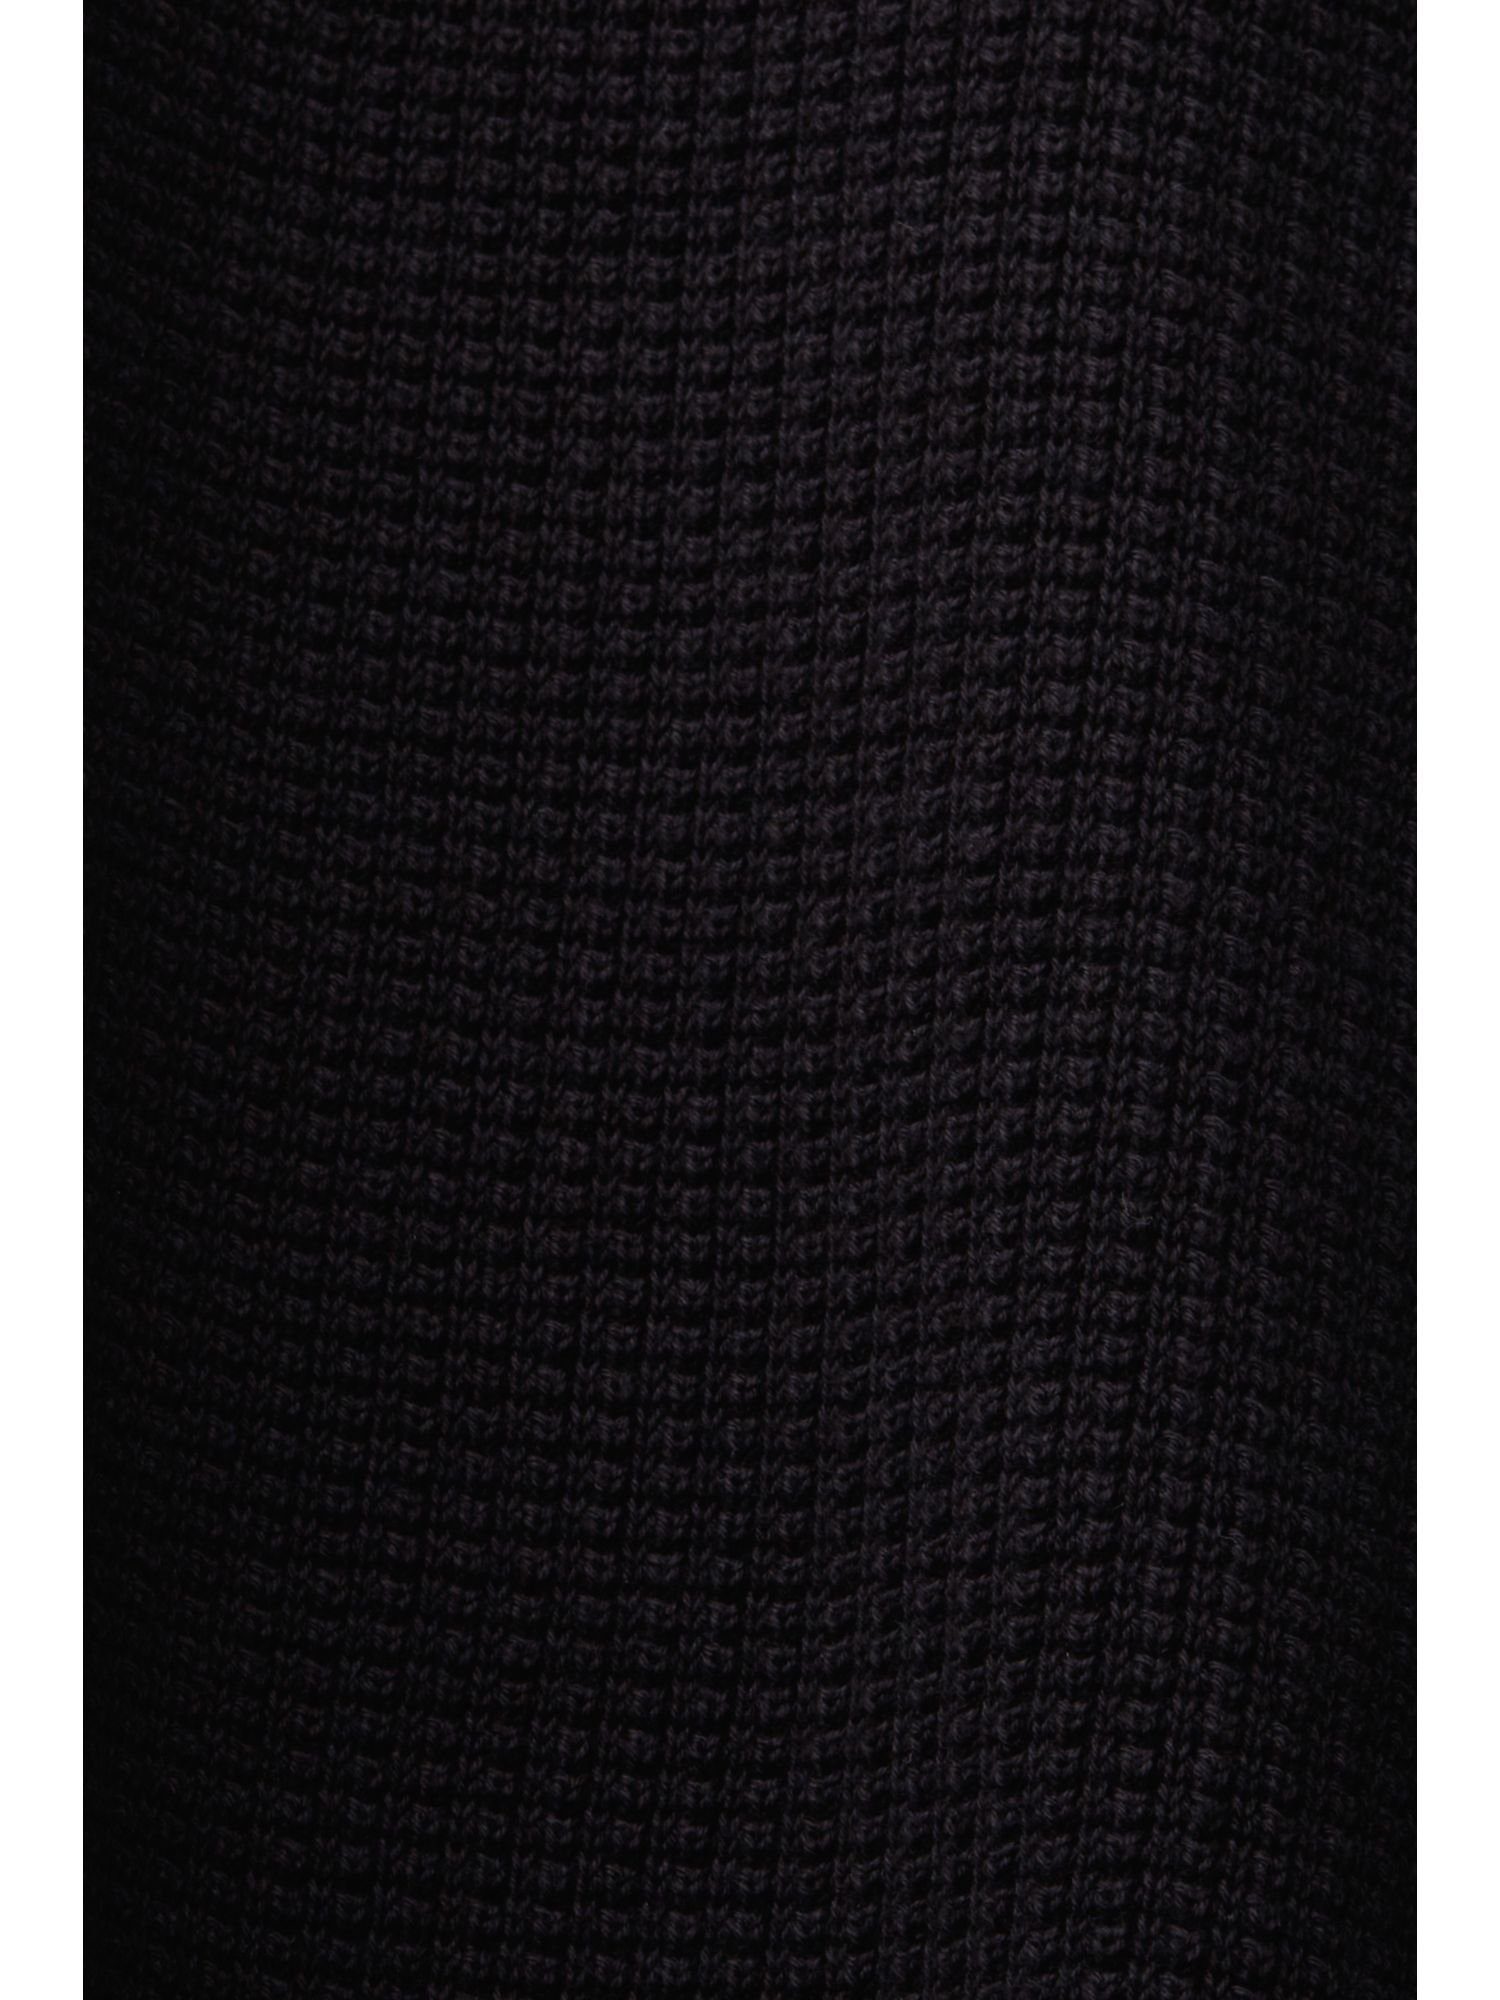 Baumwolle Troyer Troyer Pima 100% aus BLACK Esprit